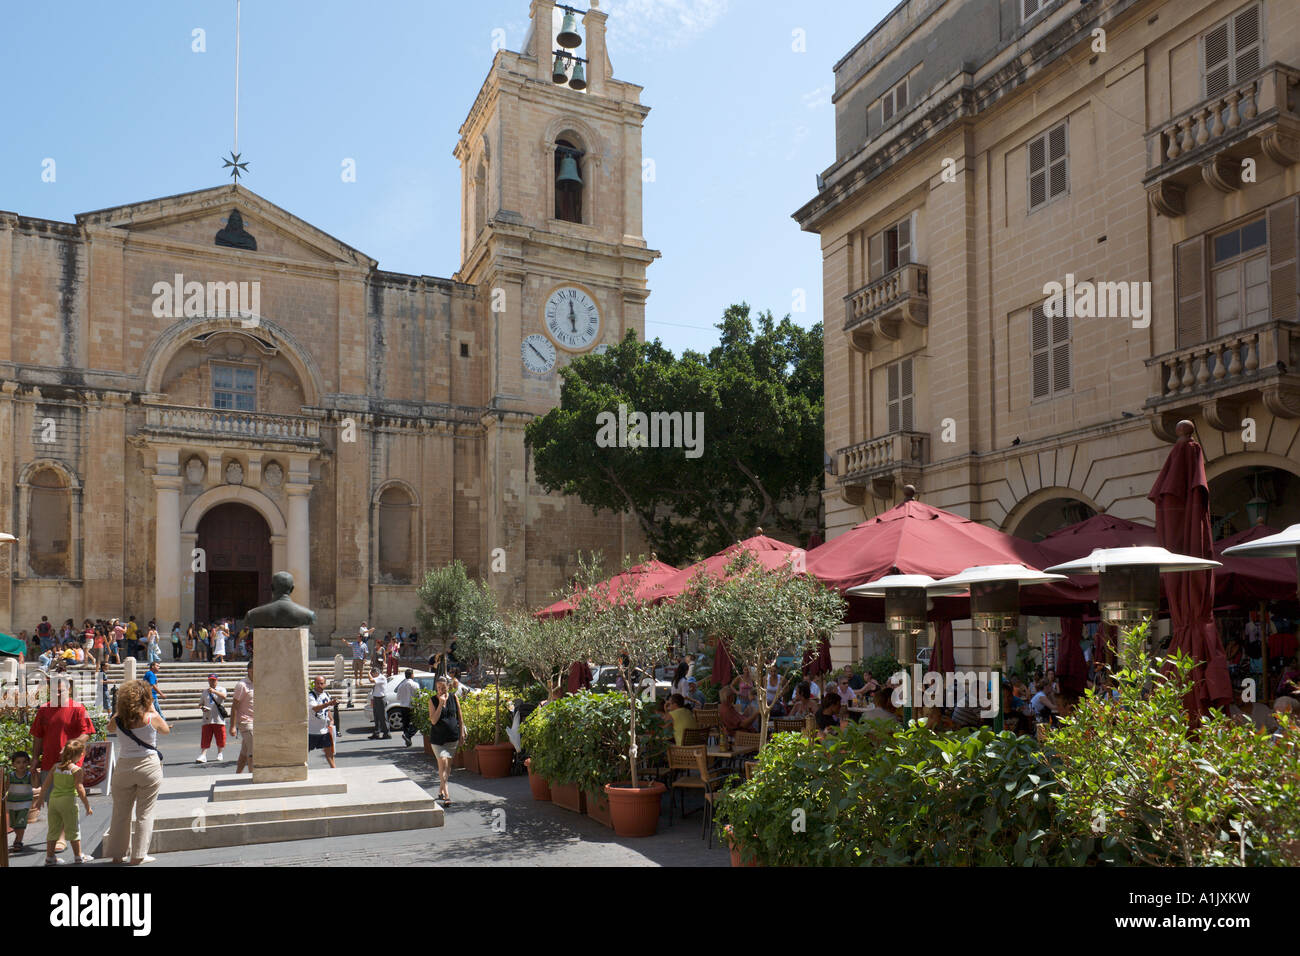 El restaurante y la Catedral de St John's Co, St John's Square, Valletta, Malta Foto de stock